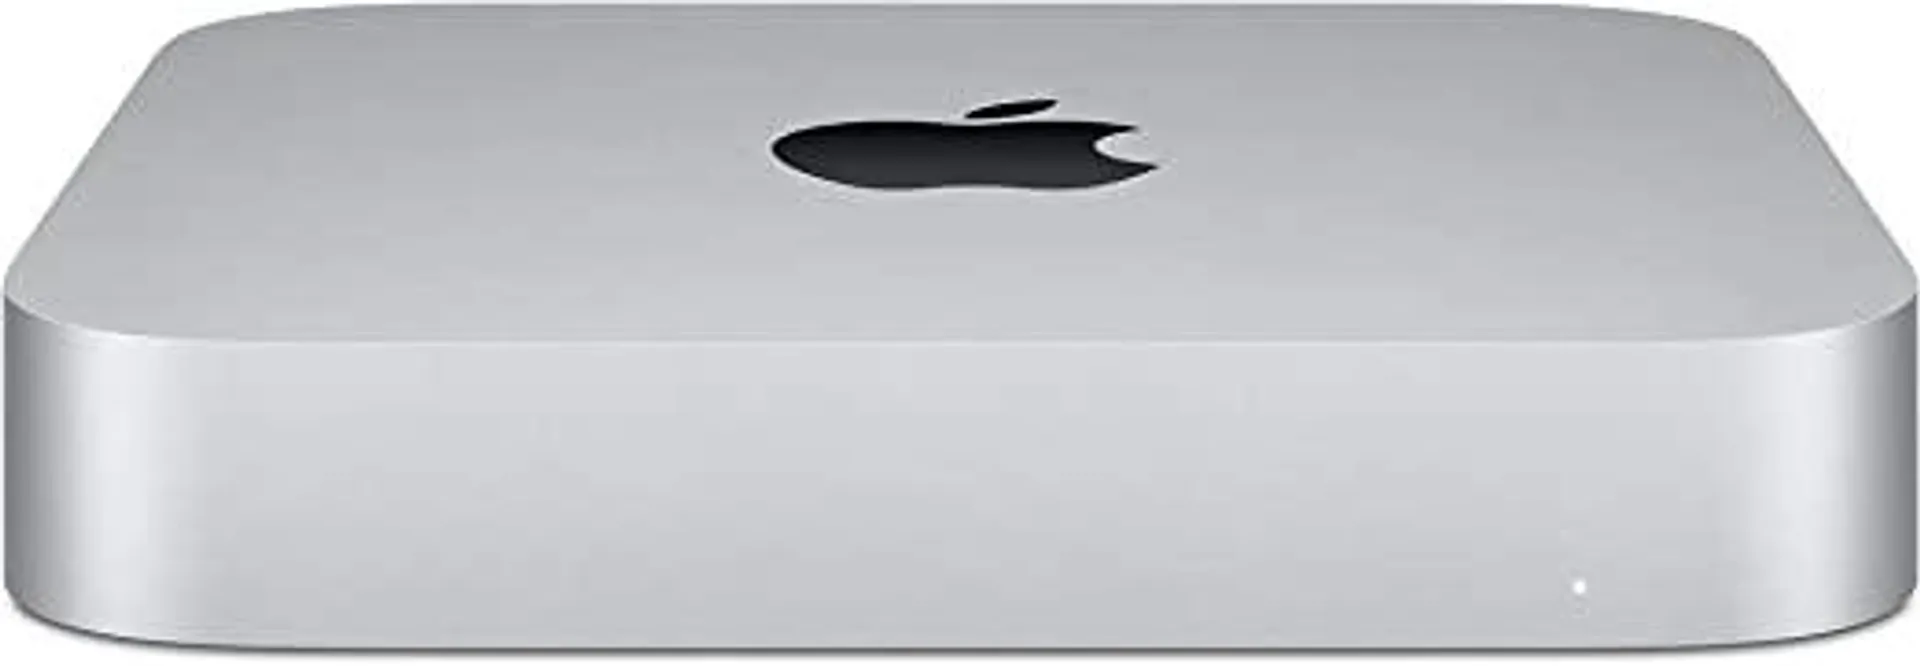 Apple 2020 Mac Mini M1 Chip (8GB RAM, 512GB SSD Storage)